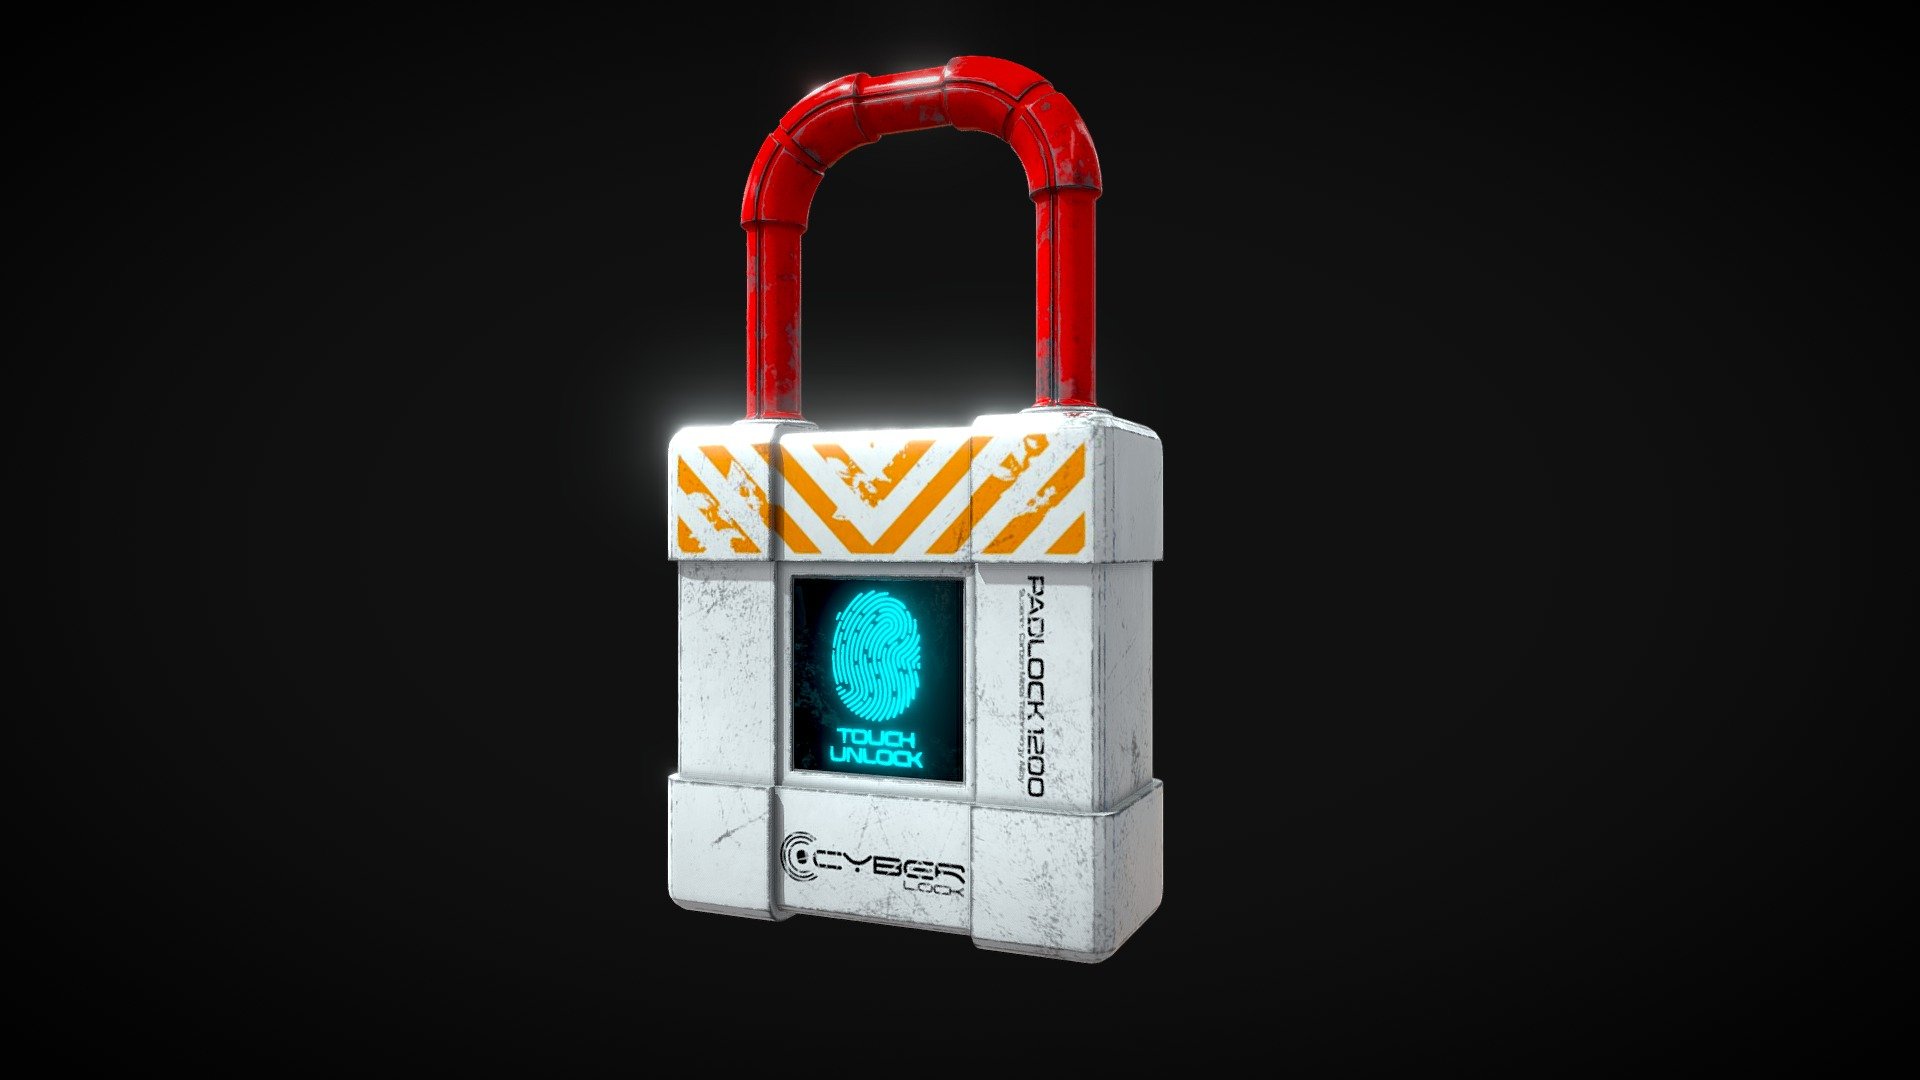 Cyberlock Padlock - Cyberlock Padlock - 3D model by nomercy.rms 3d model